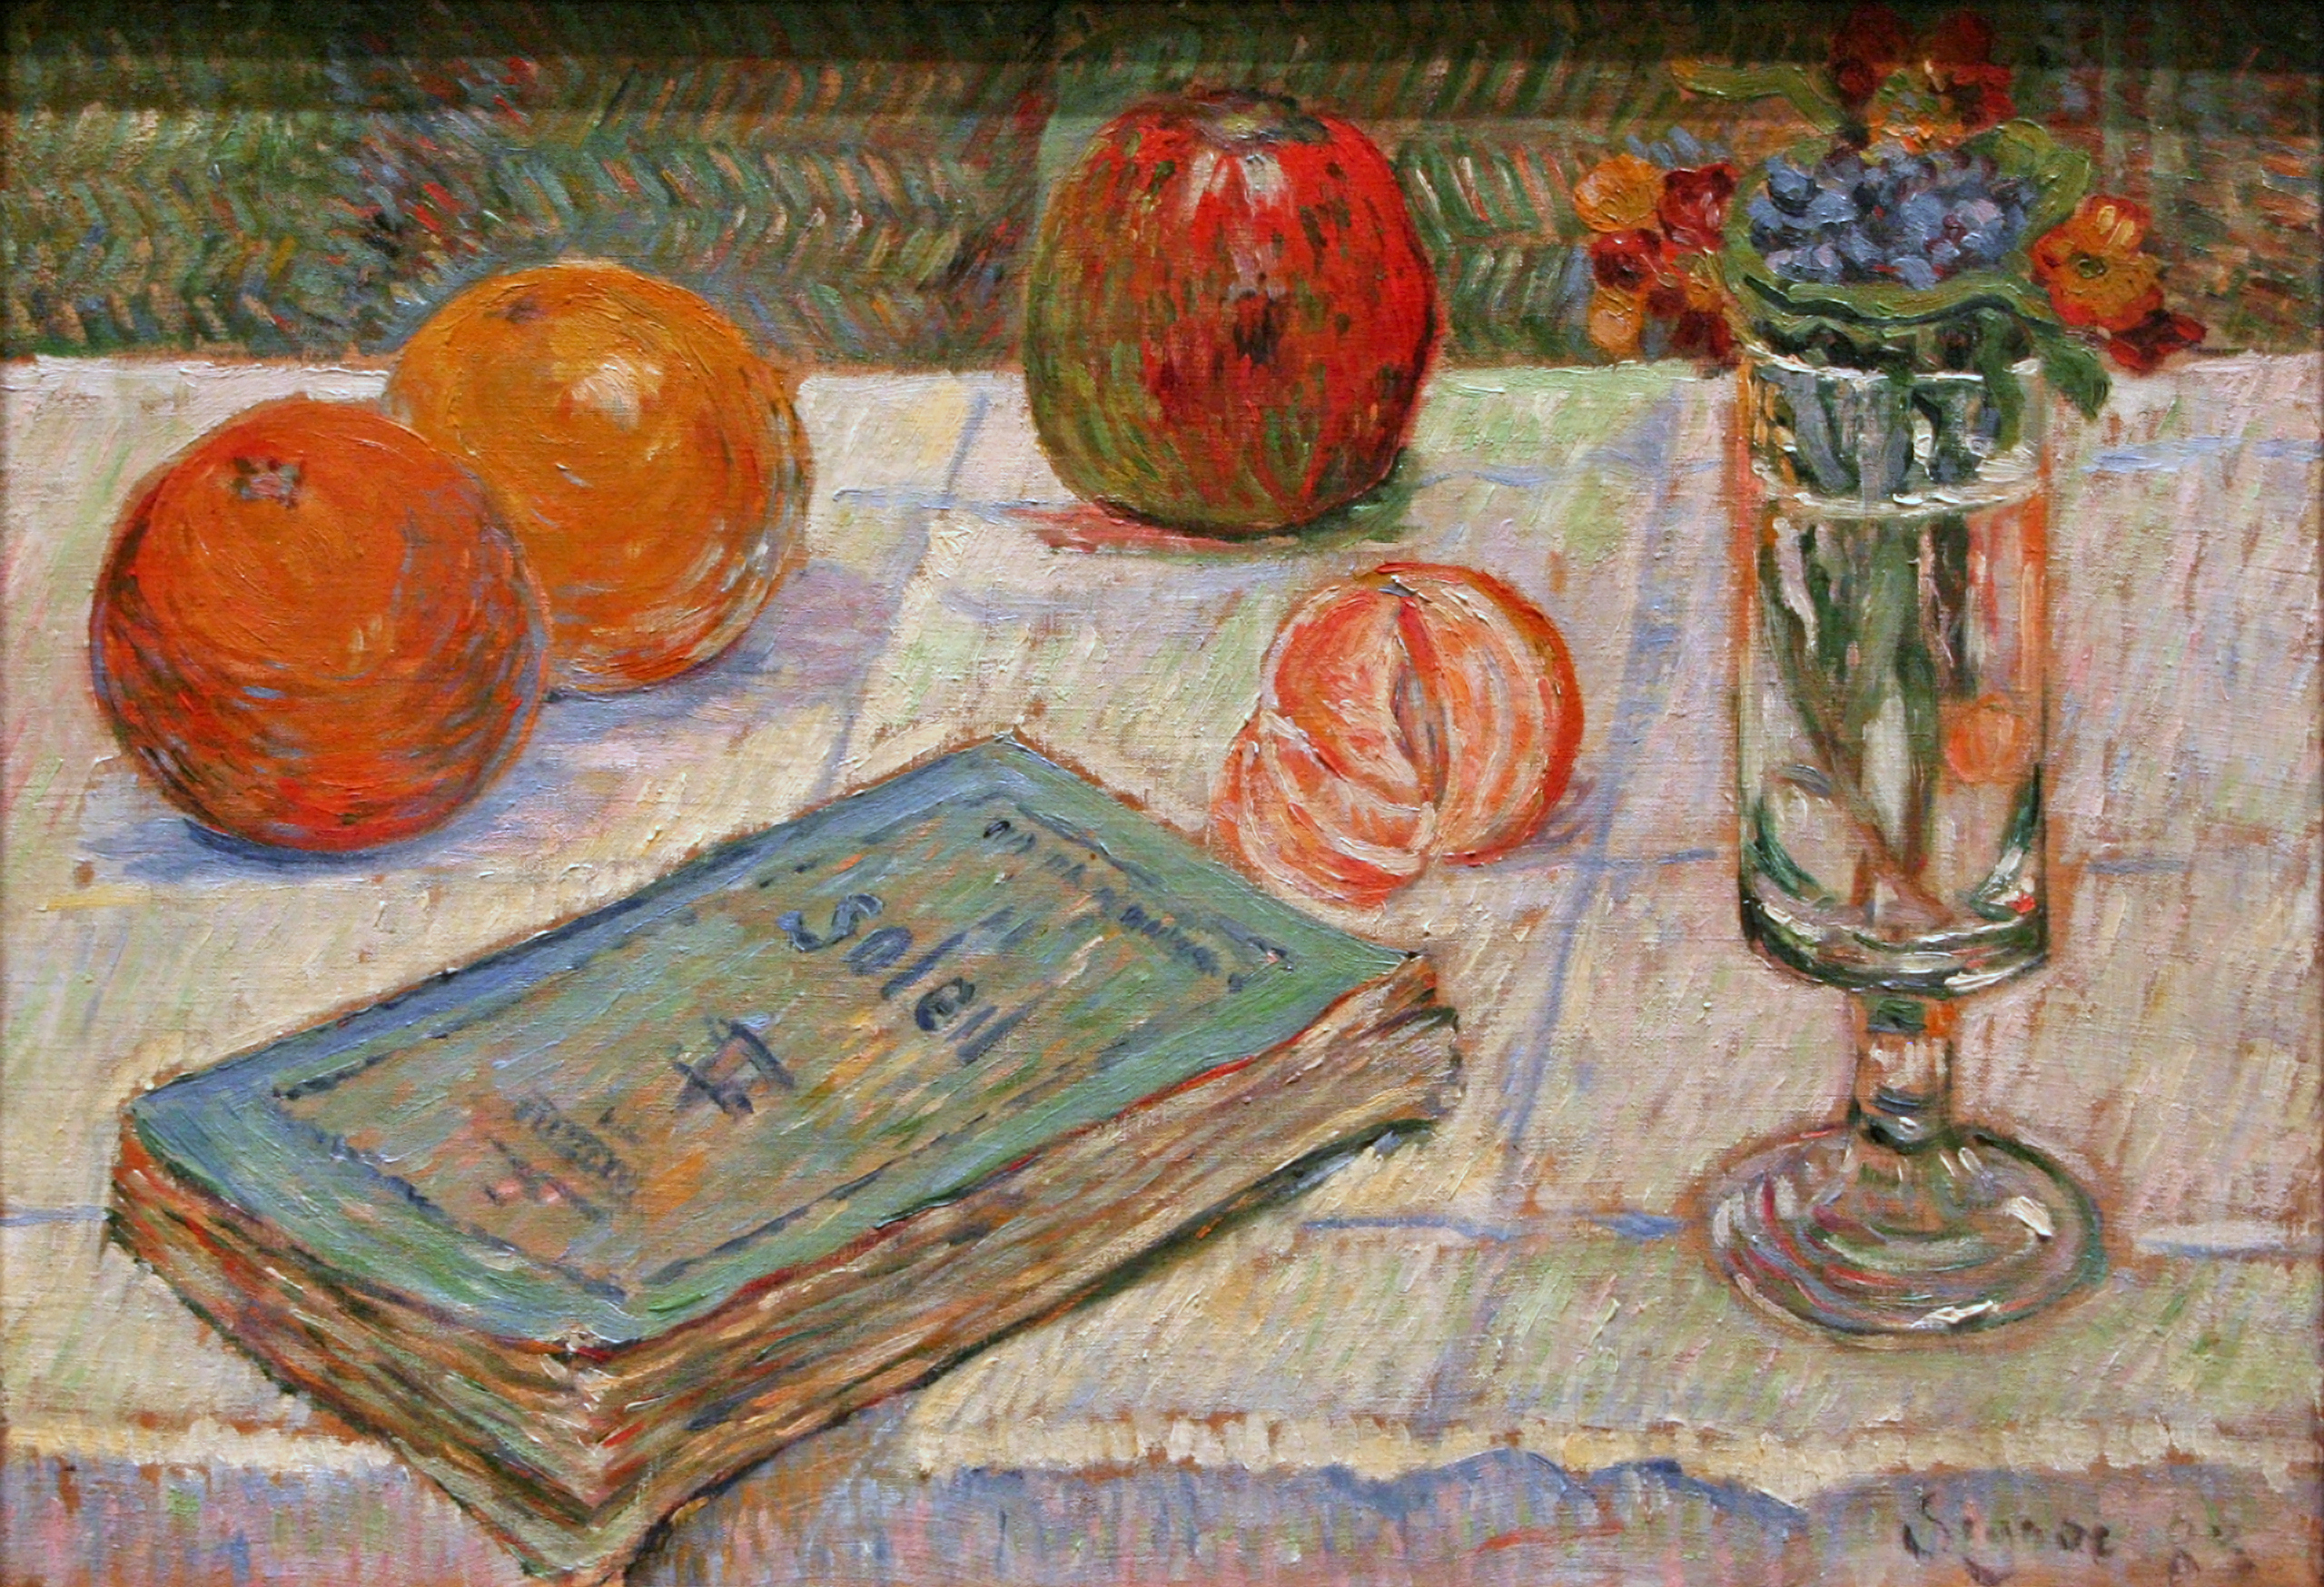 Stillleben mit Buch und Orangen by Paul Signac - 1883 - 32,5 x 46,5 cm Alte Nationalgalerie